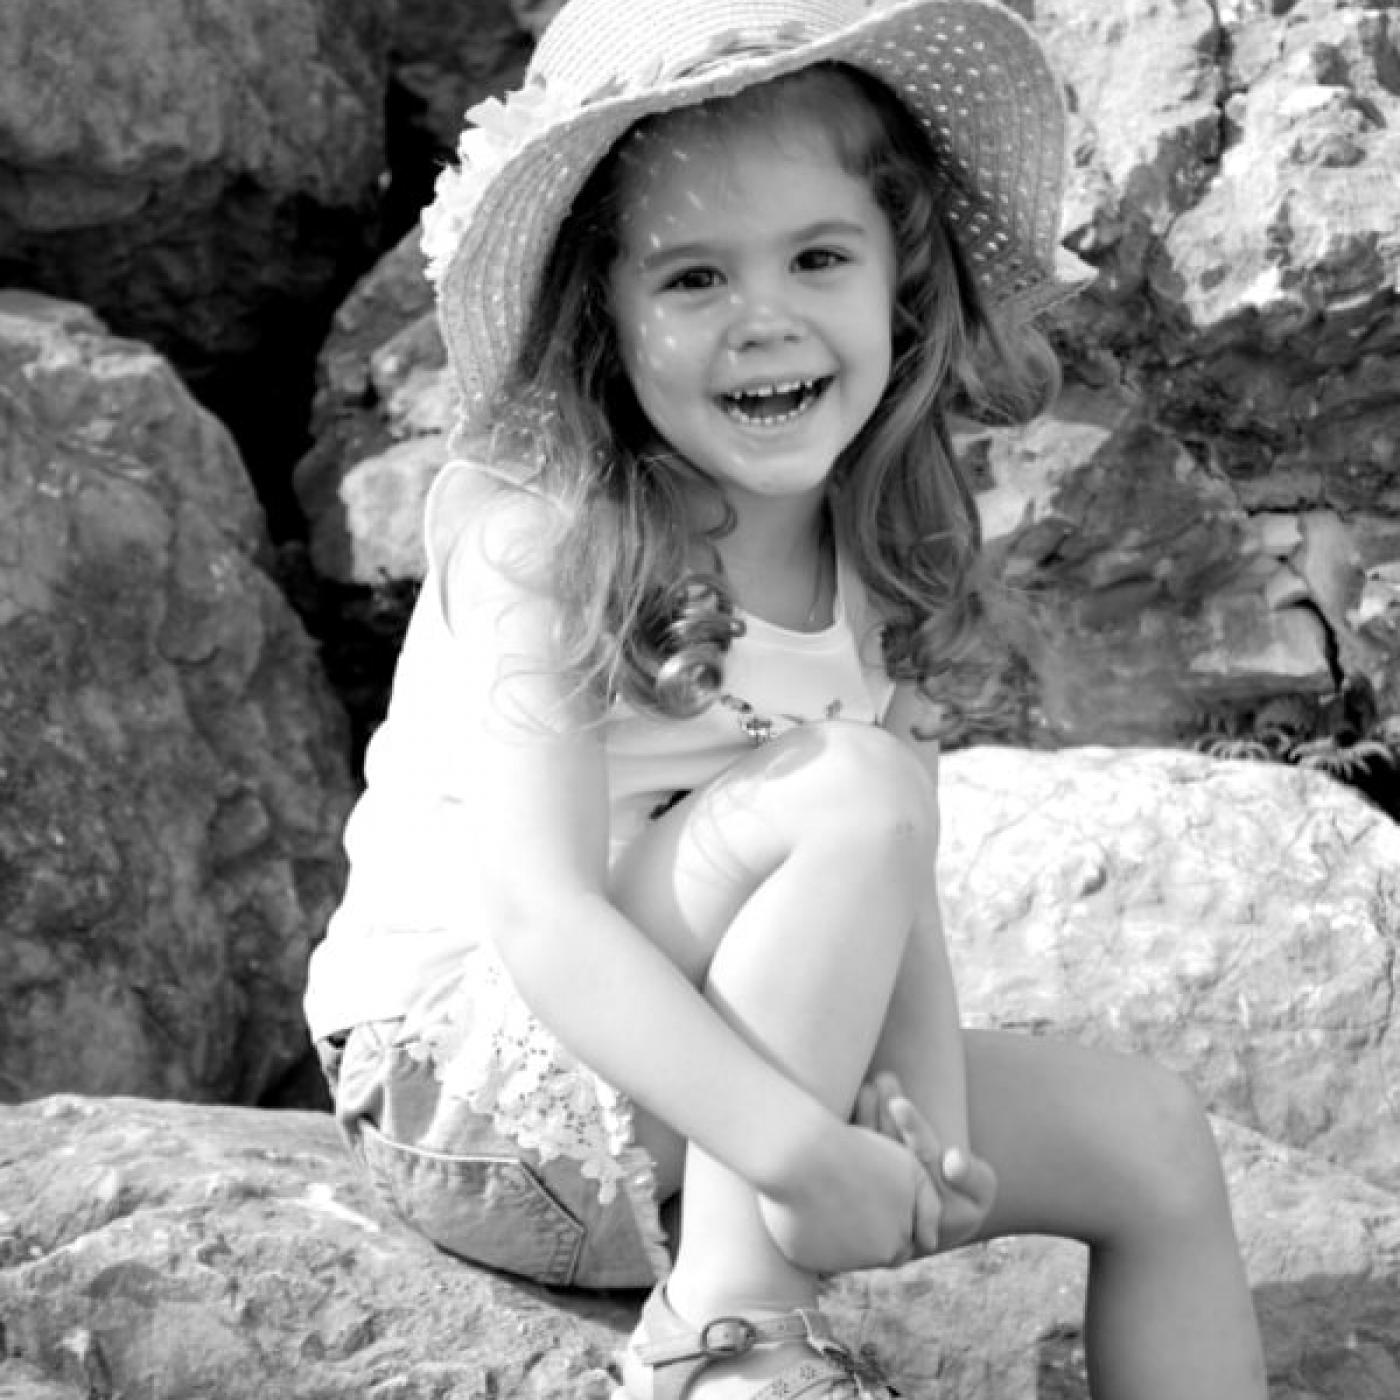 Kinderfoto in schwarz/weiß von Momentaufnahme Kerstin Tress.